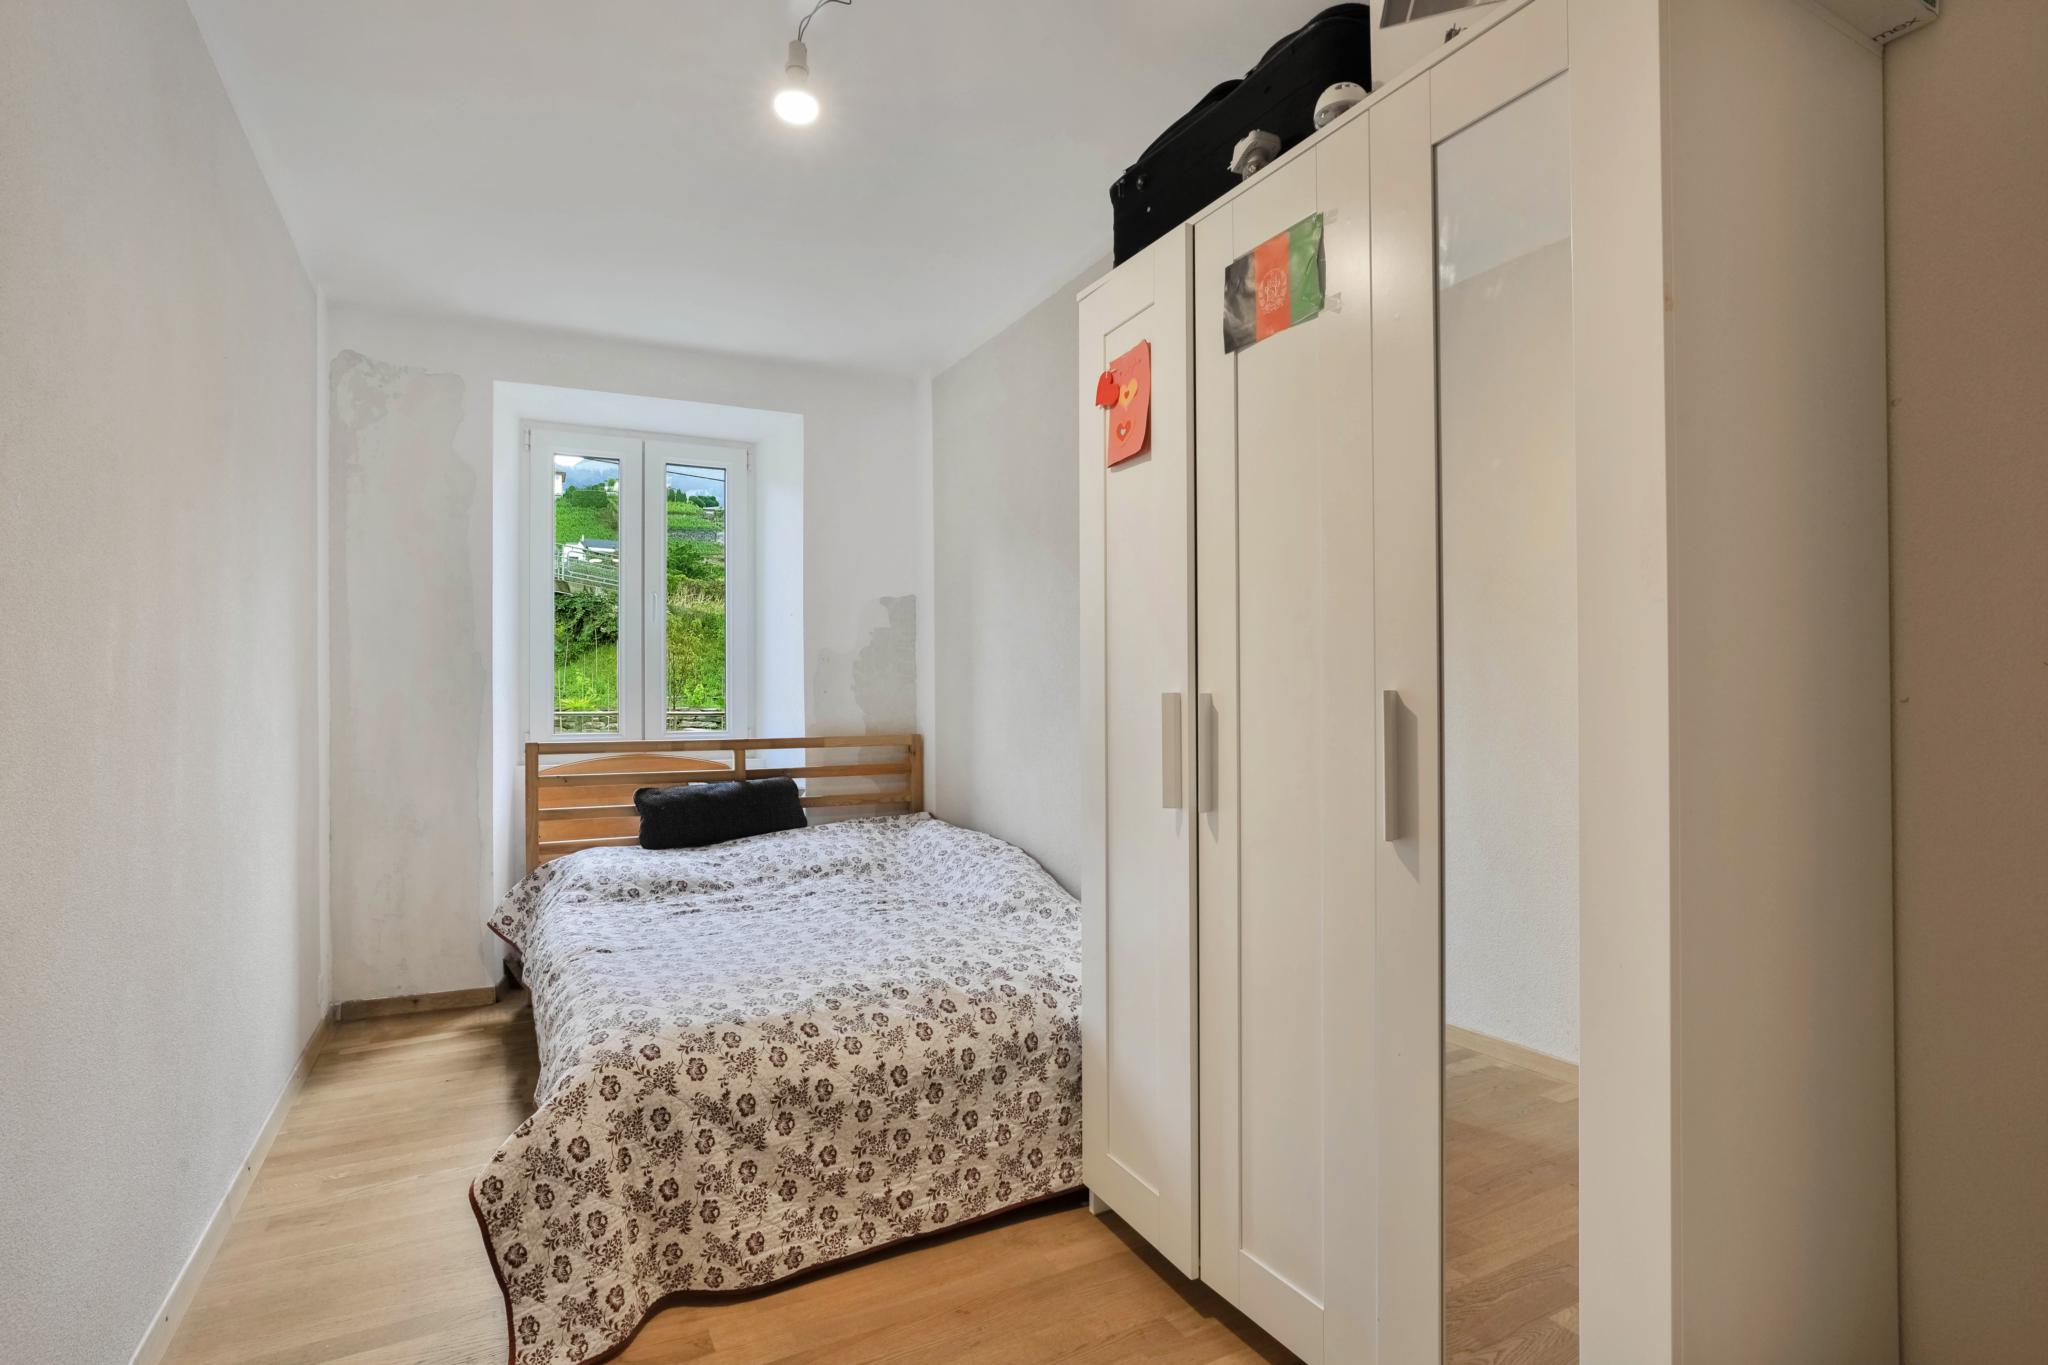 À vendre à Montreux : appartement 3.5 pièces dans résidence calme, proche du Centre ville